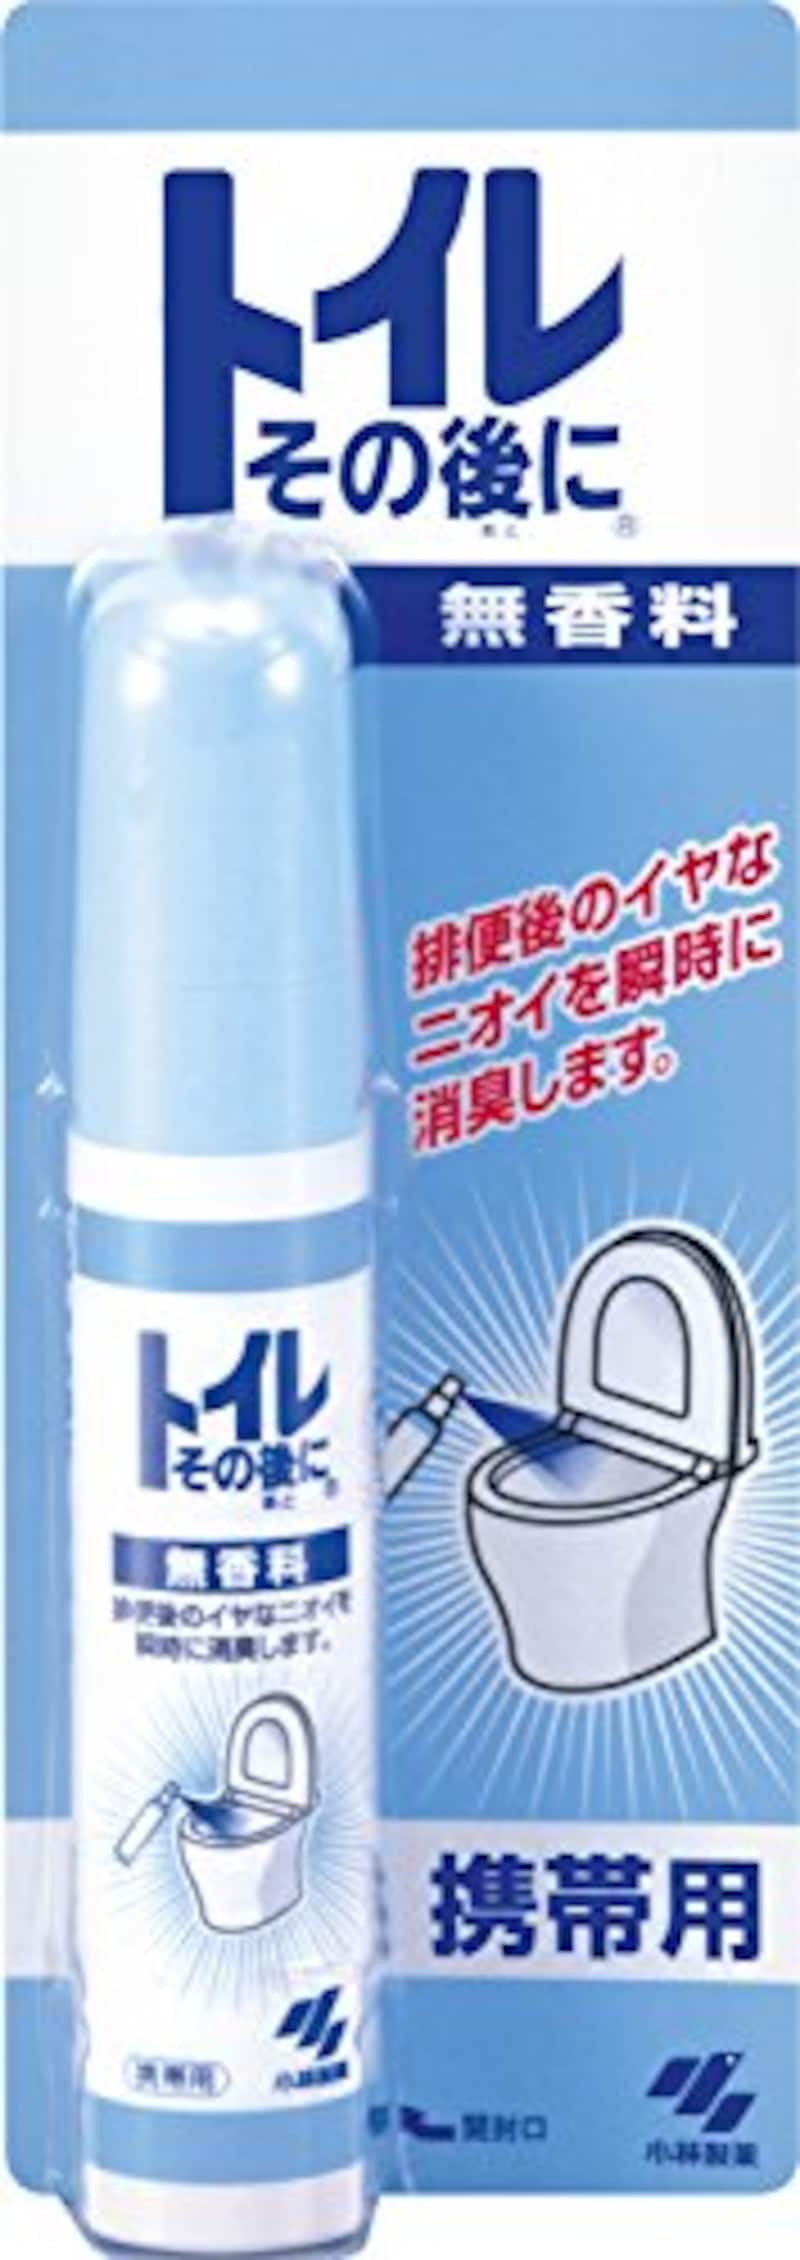 トイレその後に携帯用 消臭剤 トイレ用 無香料 スプレータイプ 23ml(約15回分)